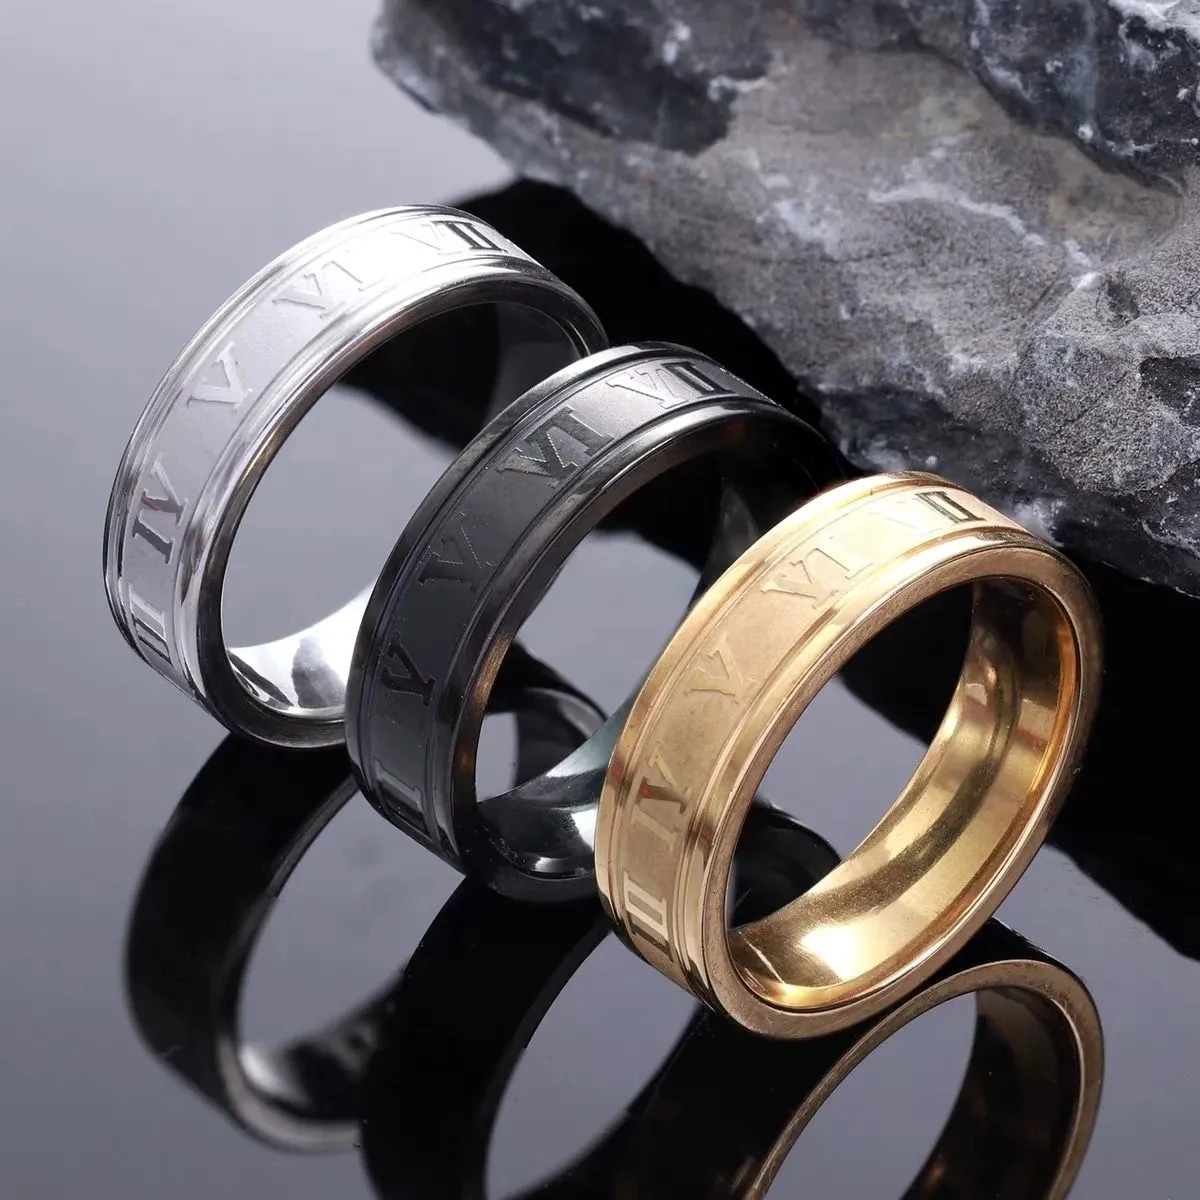 Stainless Steel Index Finger Ring - Black | Konga Online Shopping